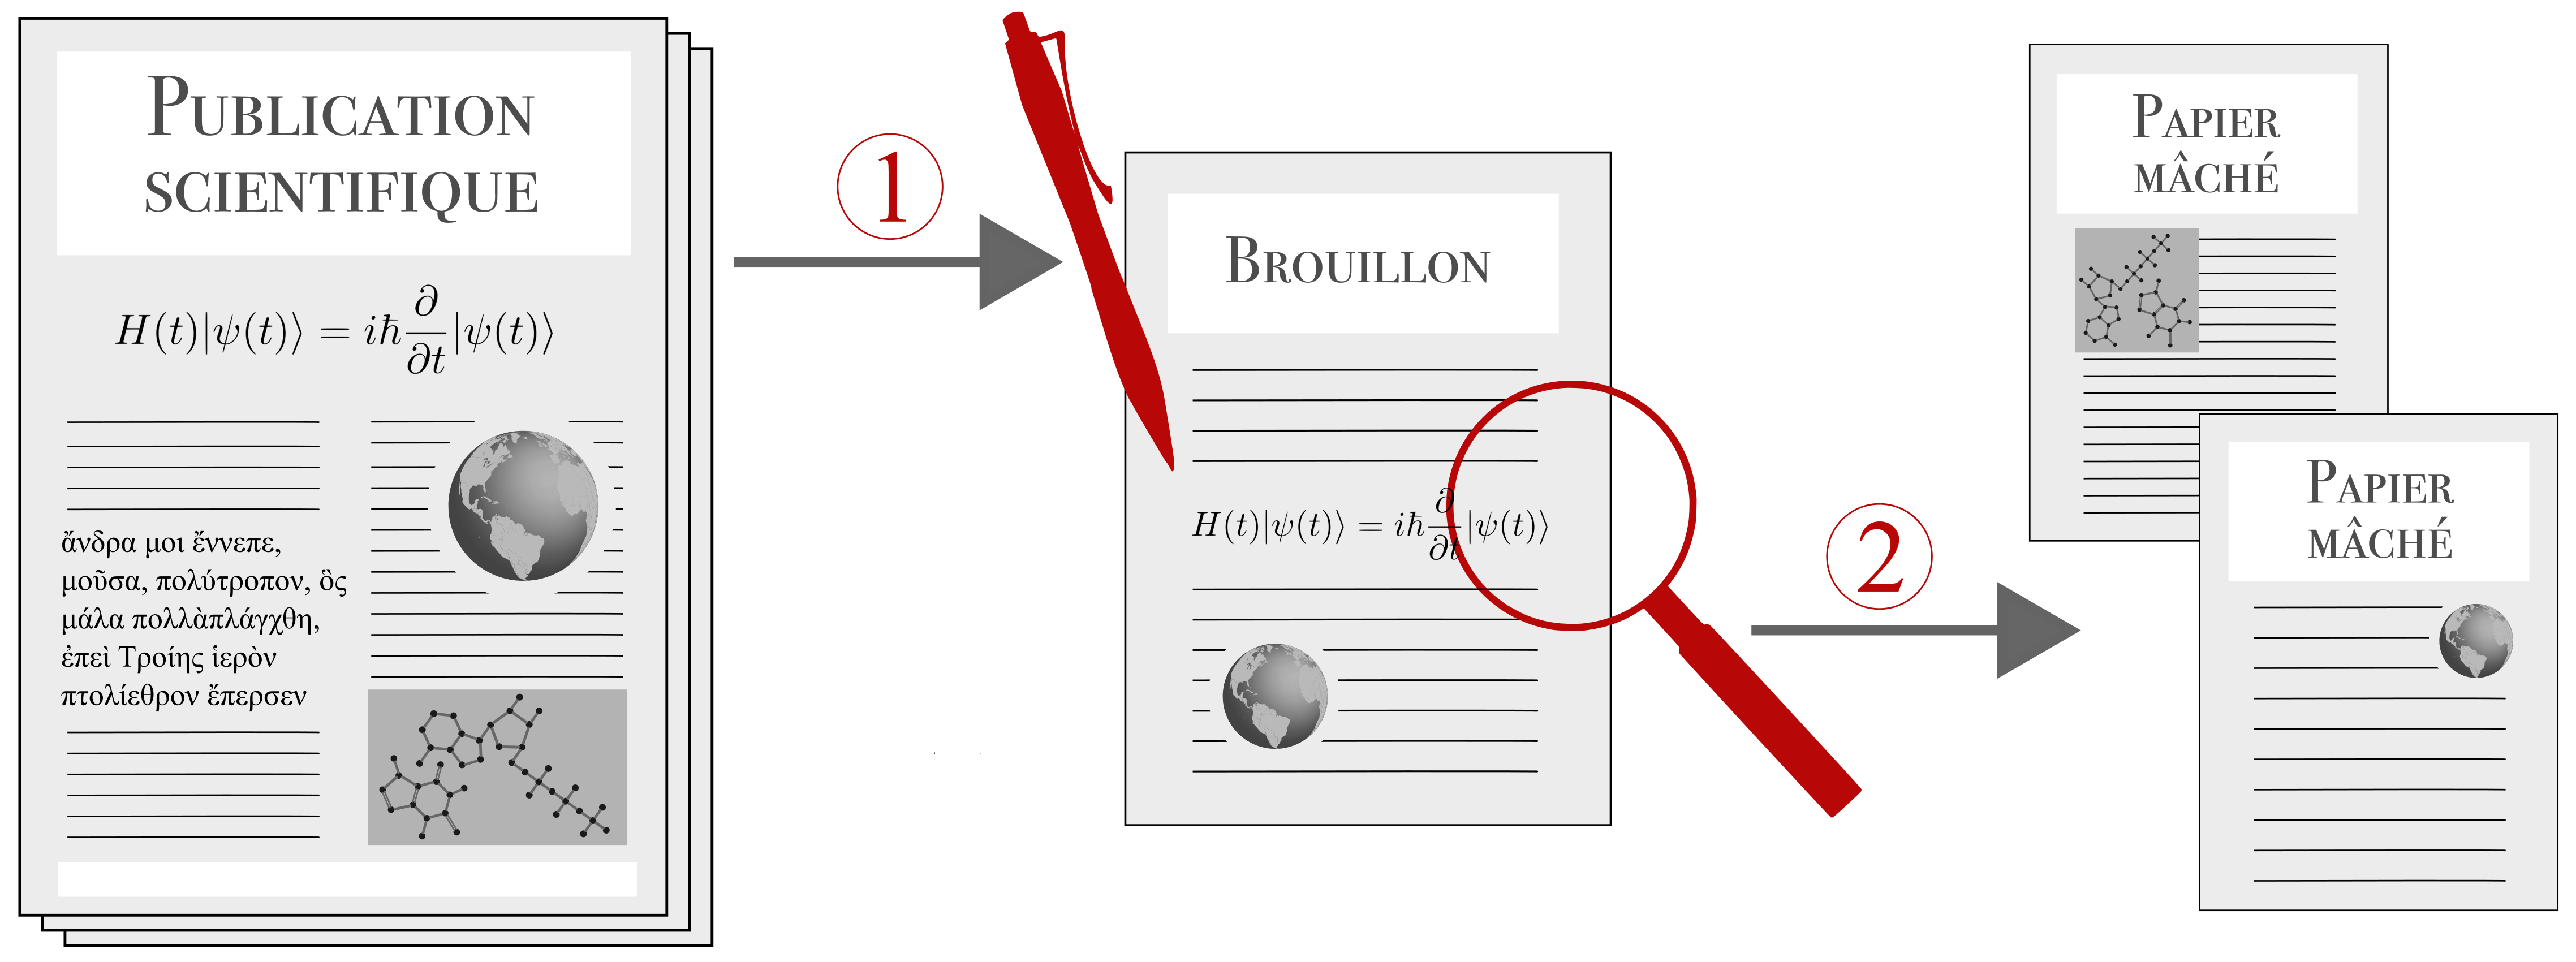 Schéma expliquant le principe de Papier-Mâché. À gauche il y a un schéma de publication scientifique. Une flèche numérotée 1 amène à une page de brouillon au centre de l'image. Une flèche numérotée 2 amène au schéma de droite qui montre 2 pages.